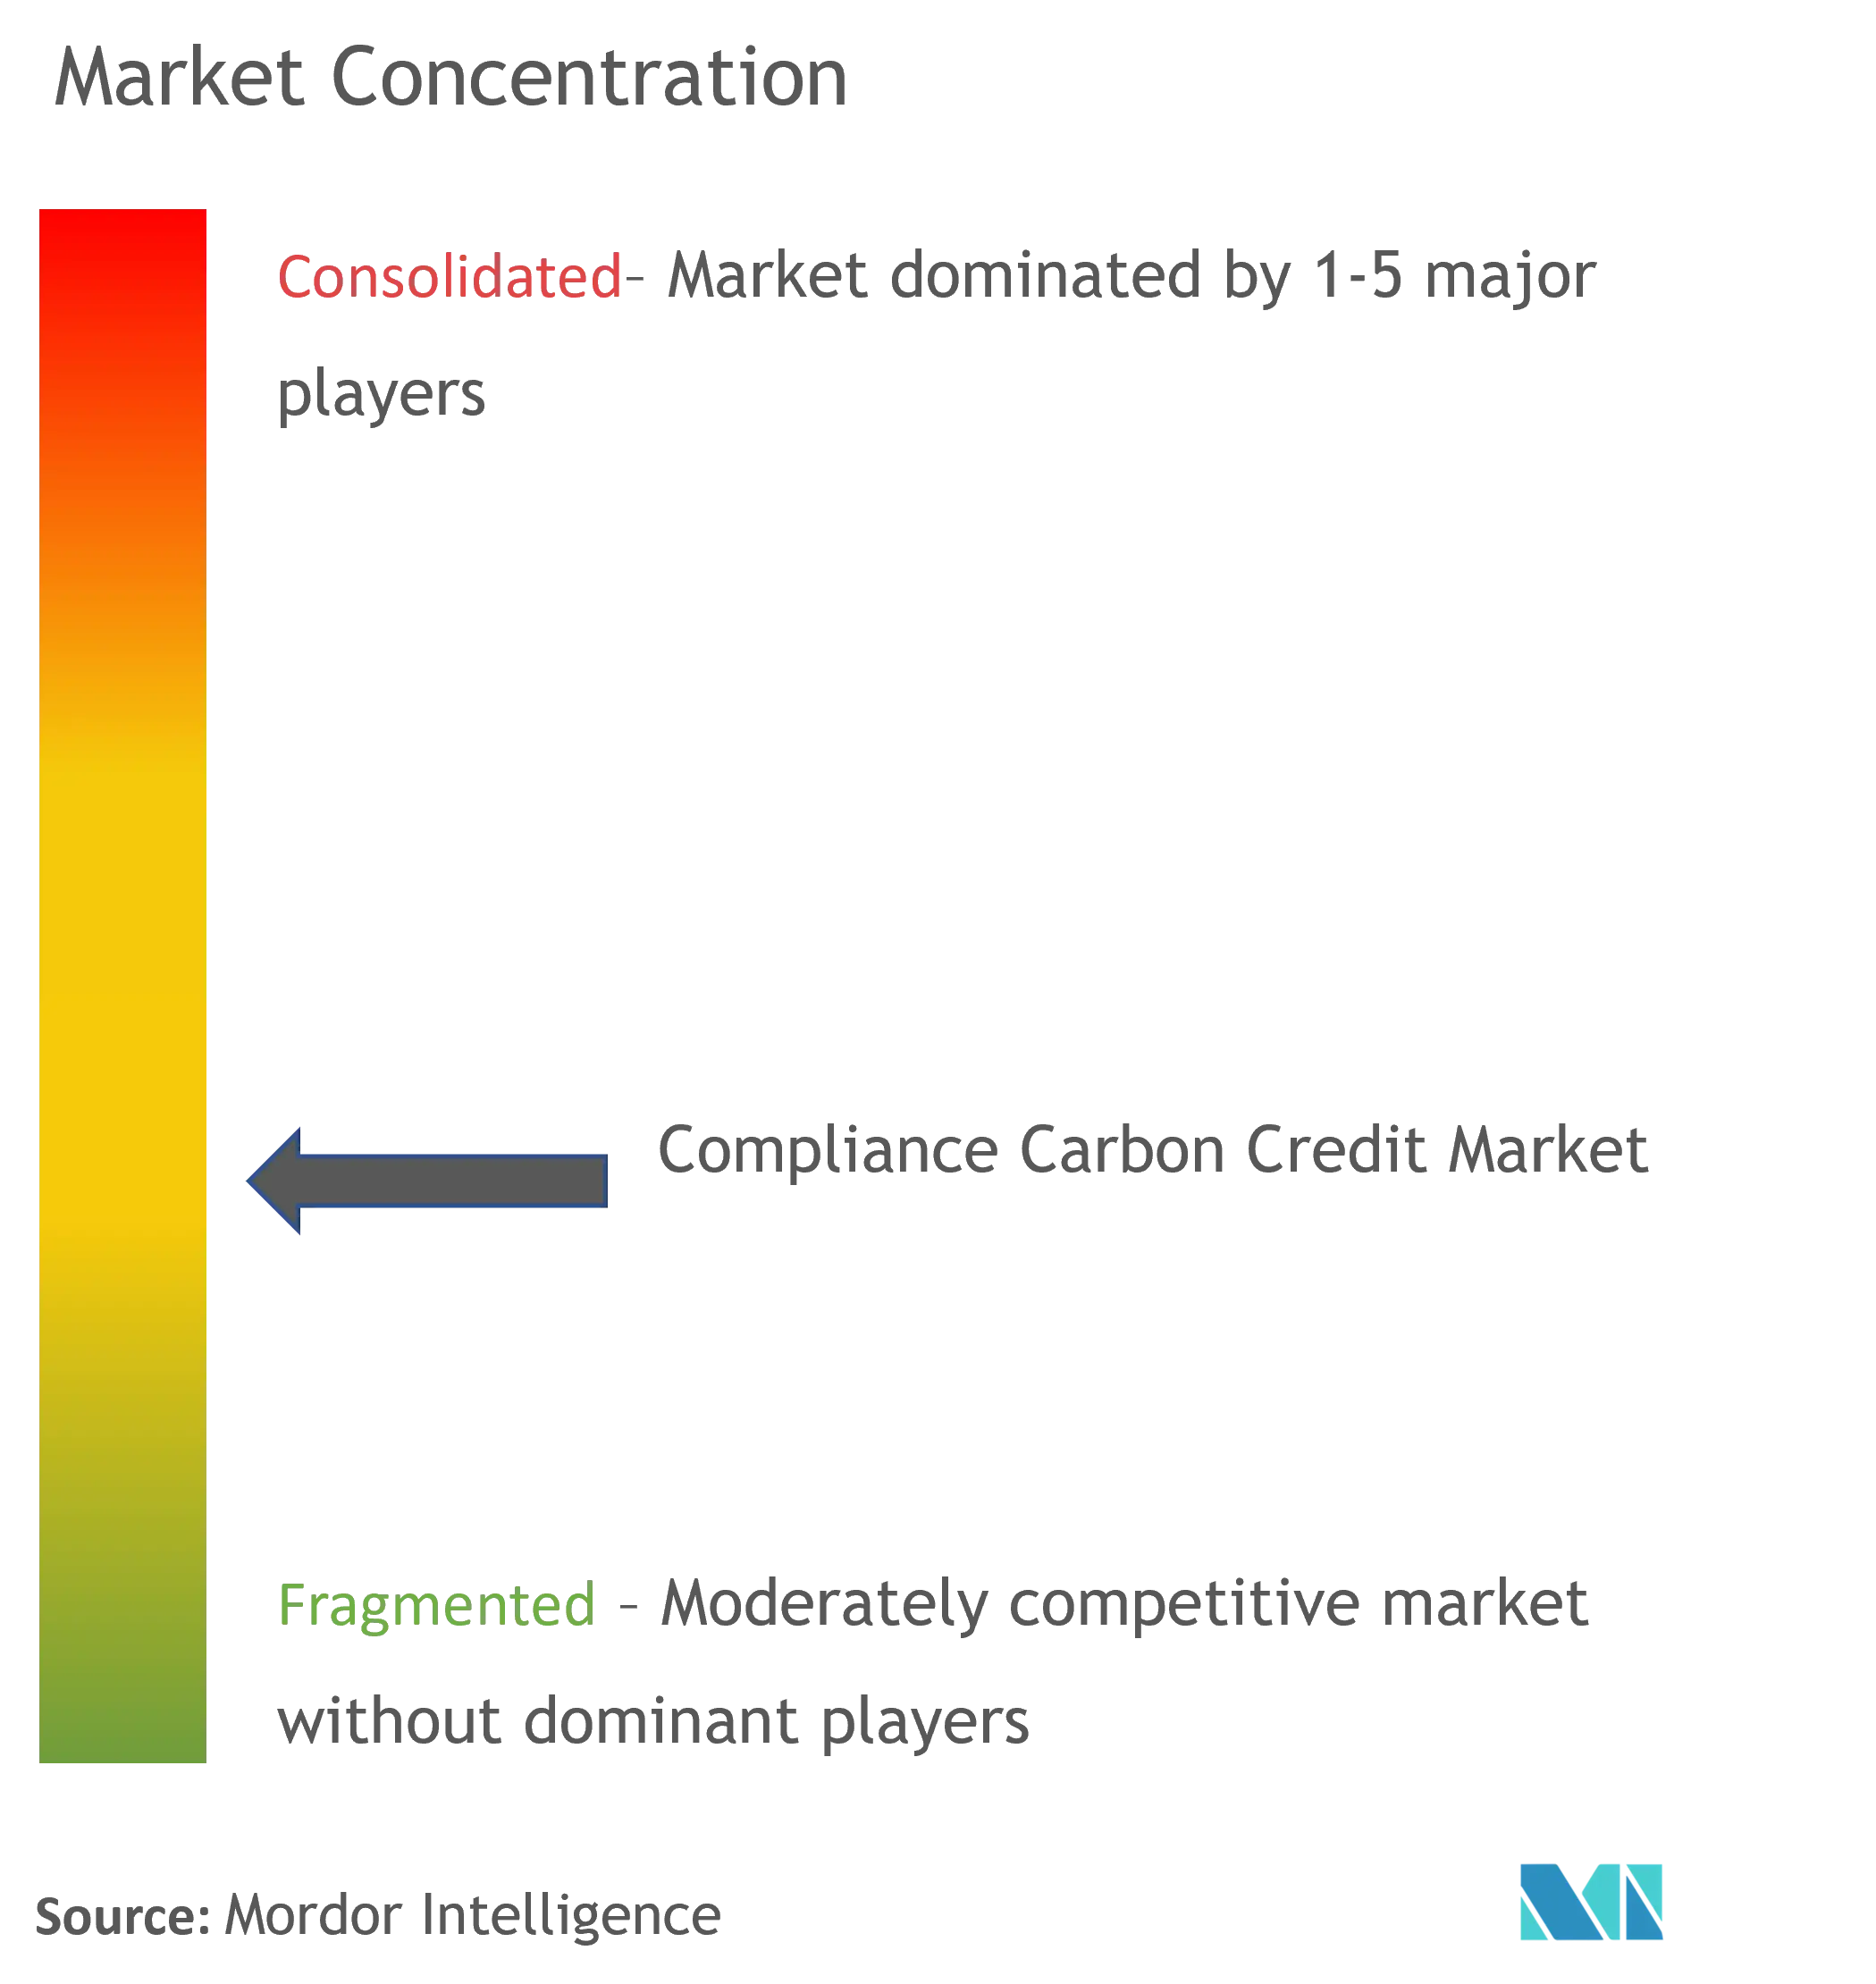 Compliance Carbon Credit Market Concentration